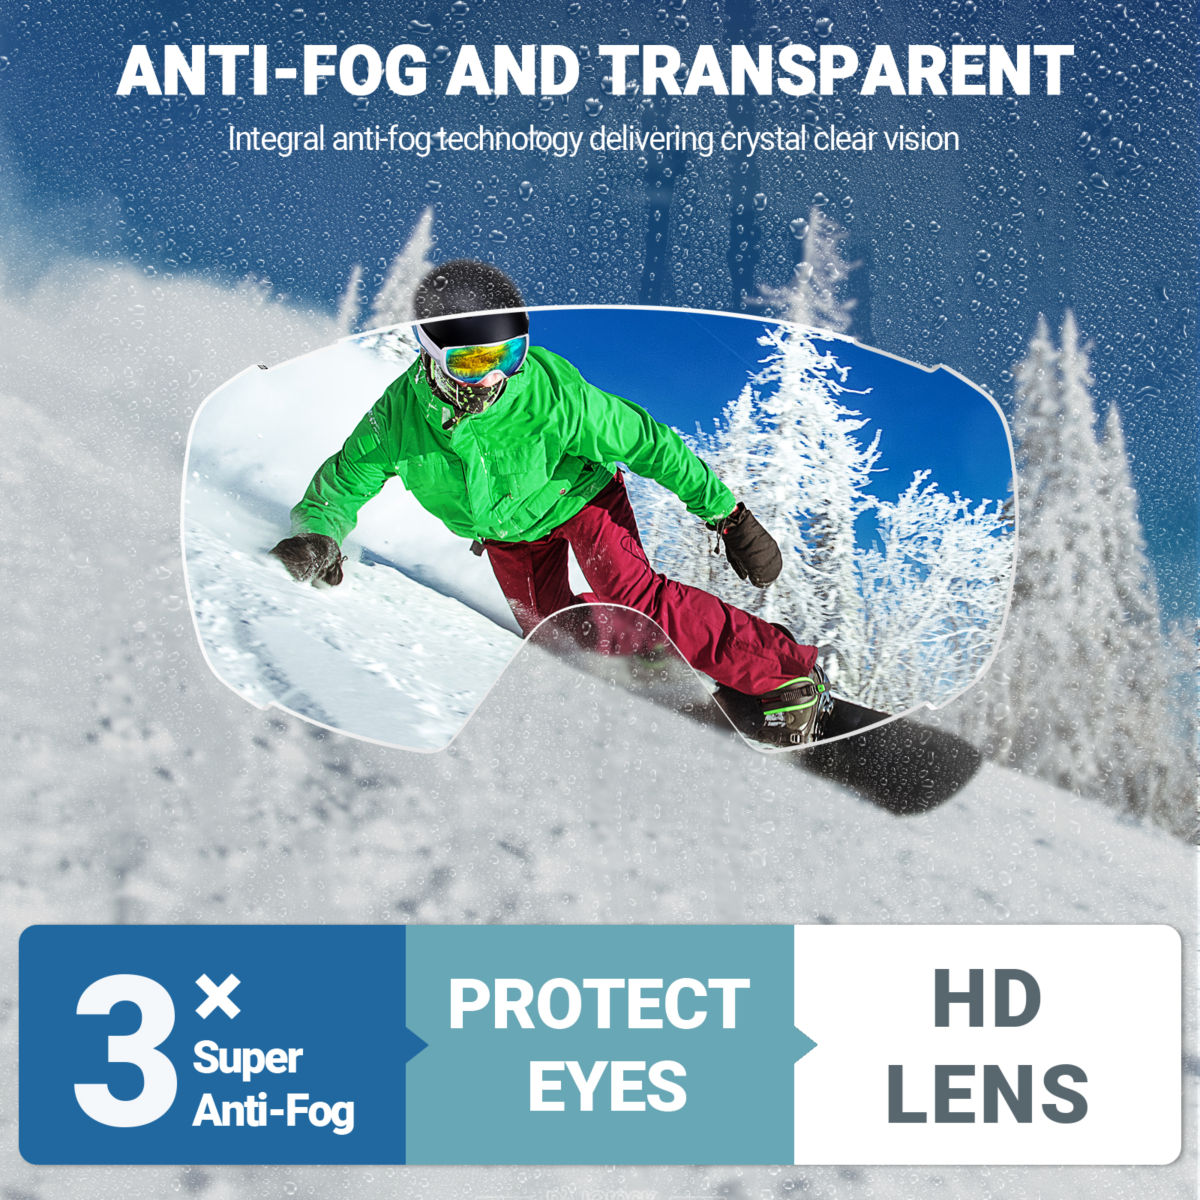 cheap otg ski goggles